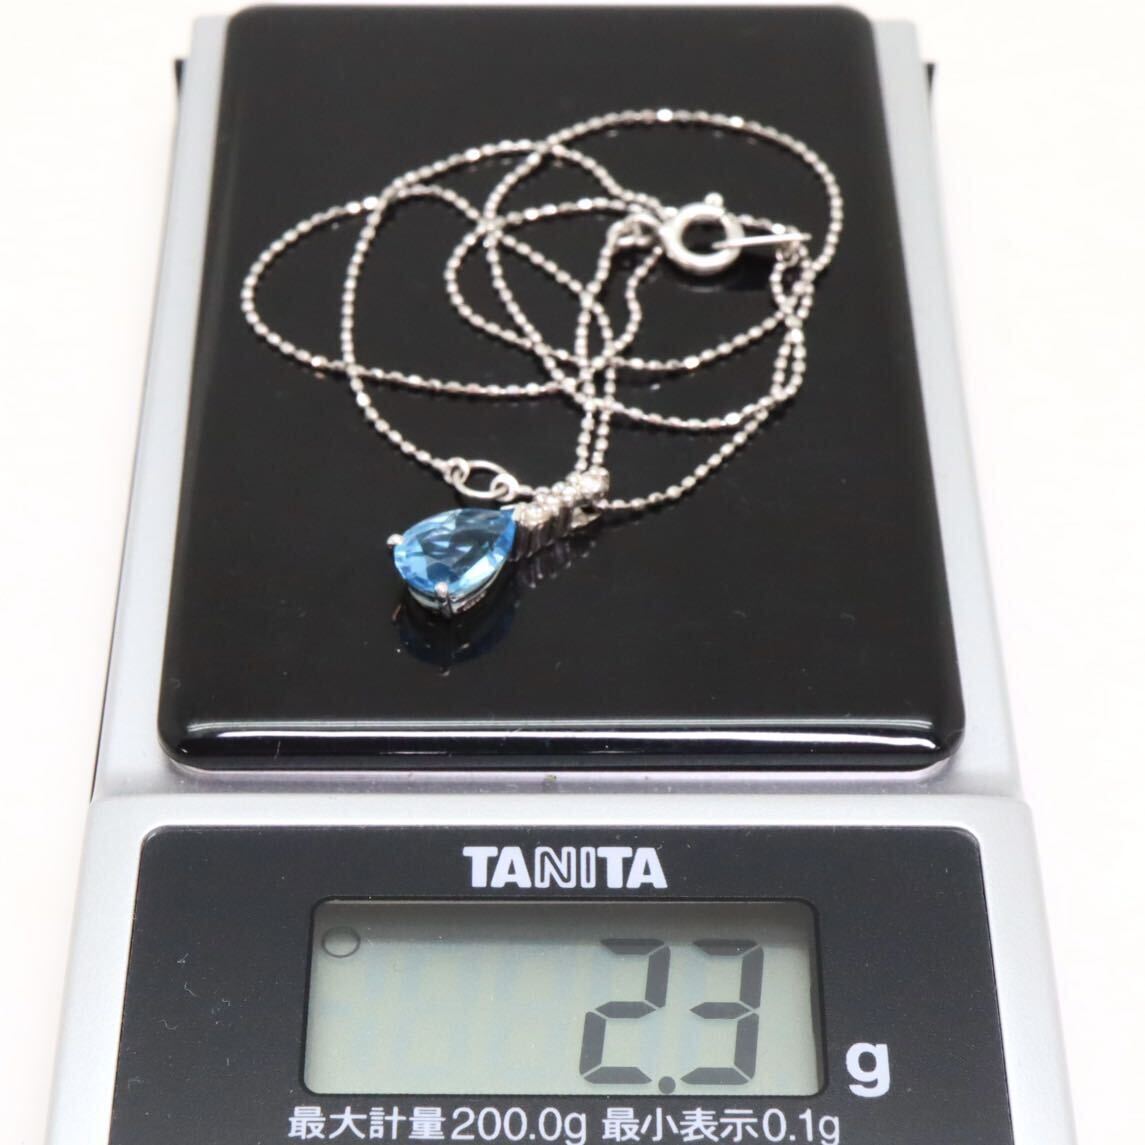 良品!!＊K18WG天然ブルートパーズ/天然ダイヤモンドペンダント＊b 約2.3g 約40.0cm blue topaz diamond jewelry necklace pendant EA6/EA6の画像10